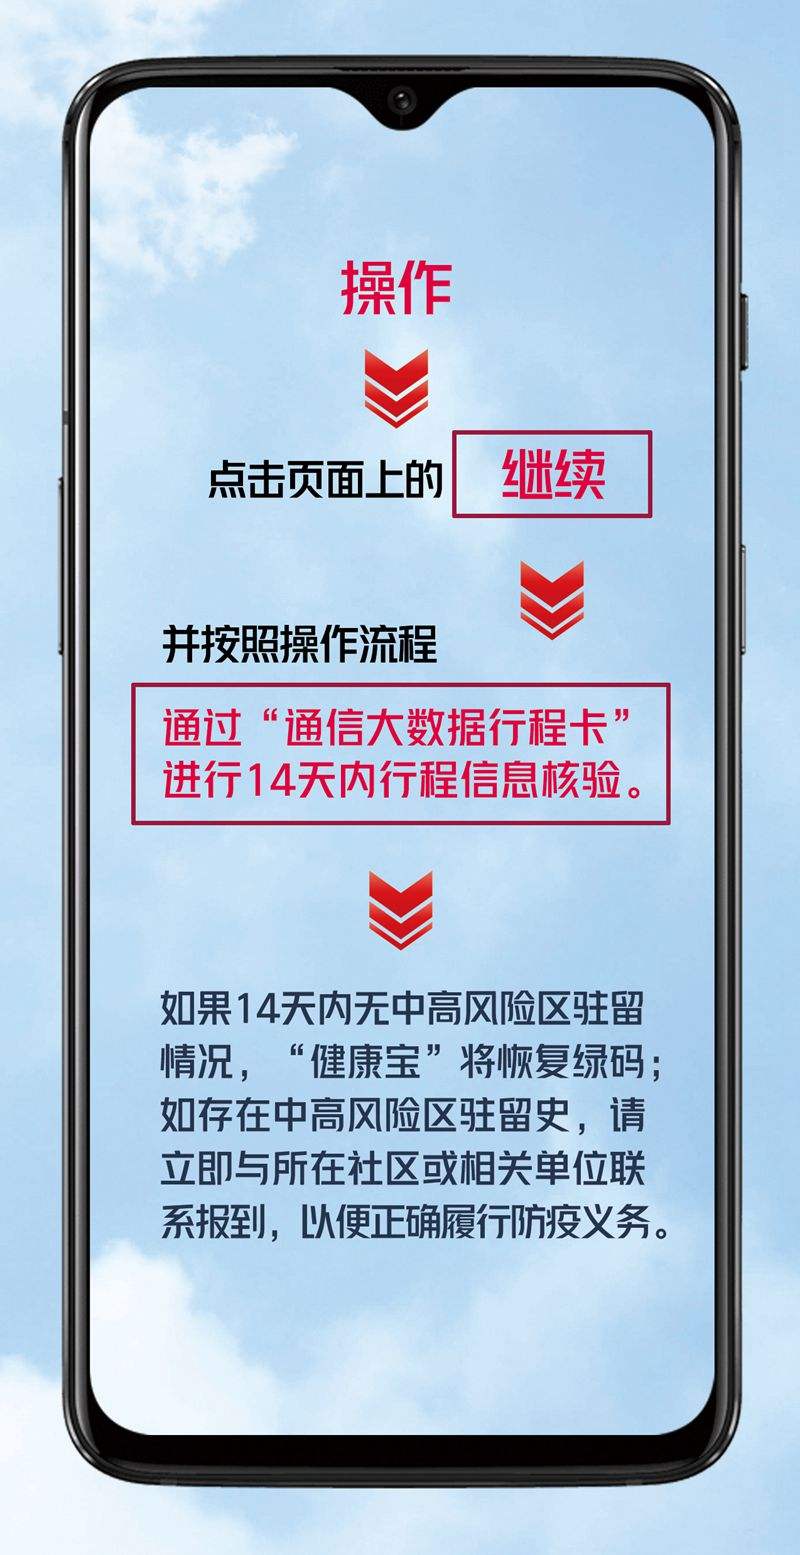 关于北京儿童医院急求黄牛挂号电话的记得收藏；北京部分市民收到健康宝“弹窗”，咋回事?咋解决?的信息